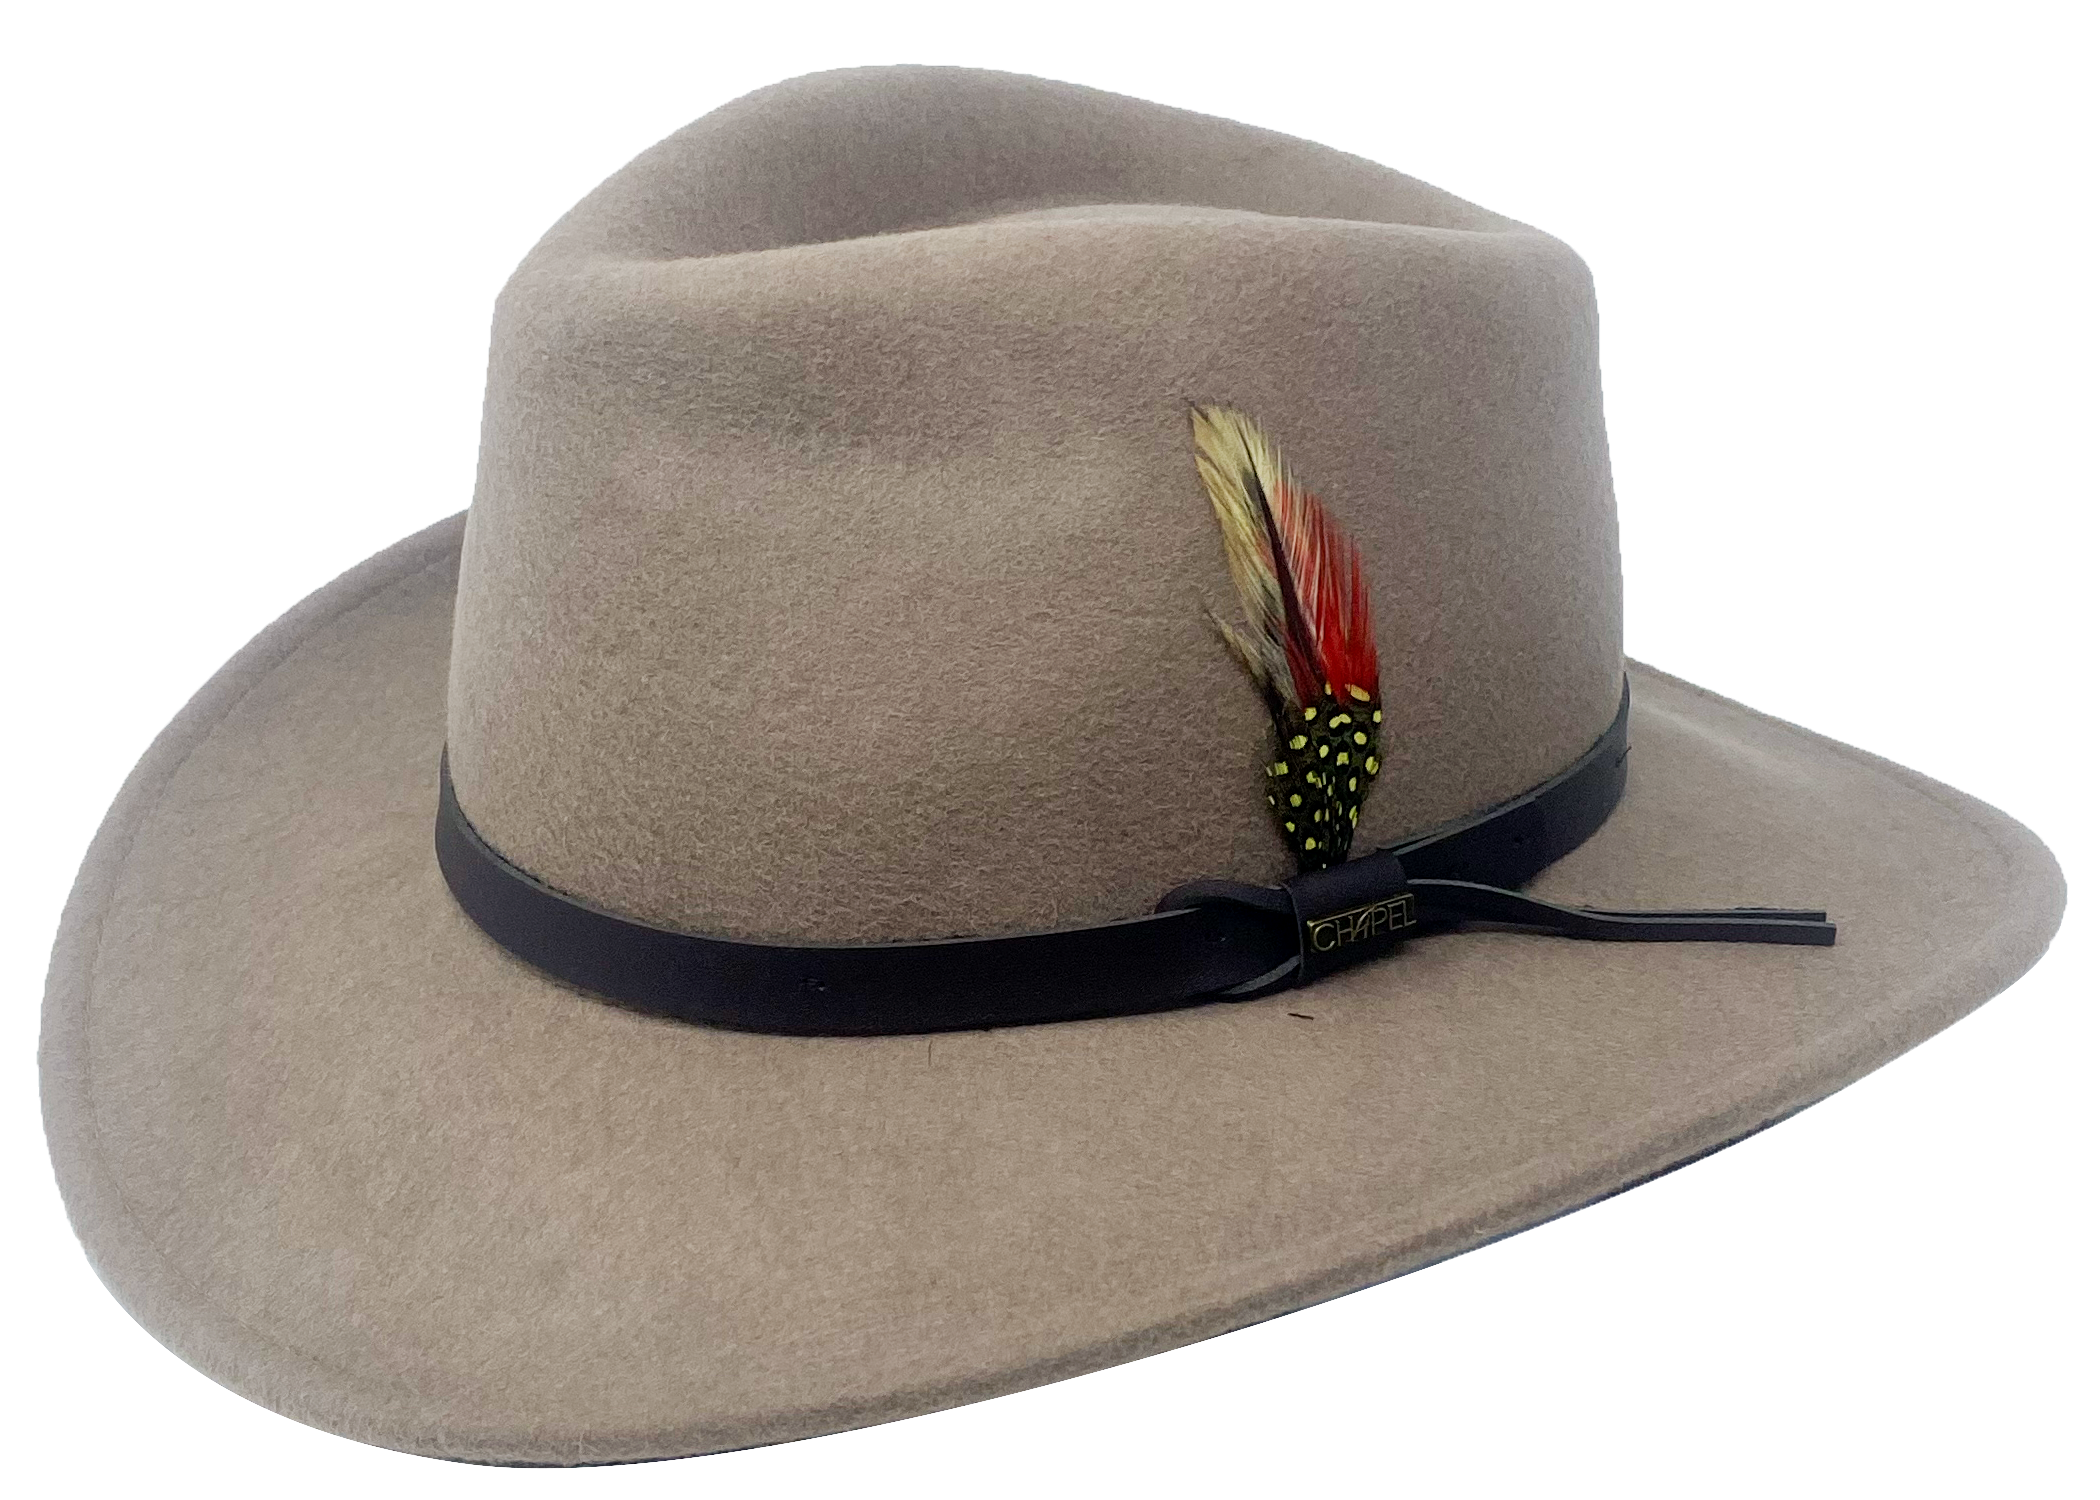 Memphis Cowboy Hat